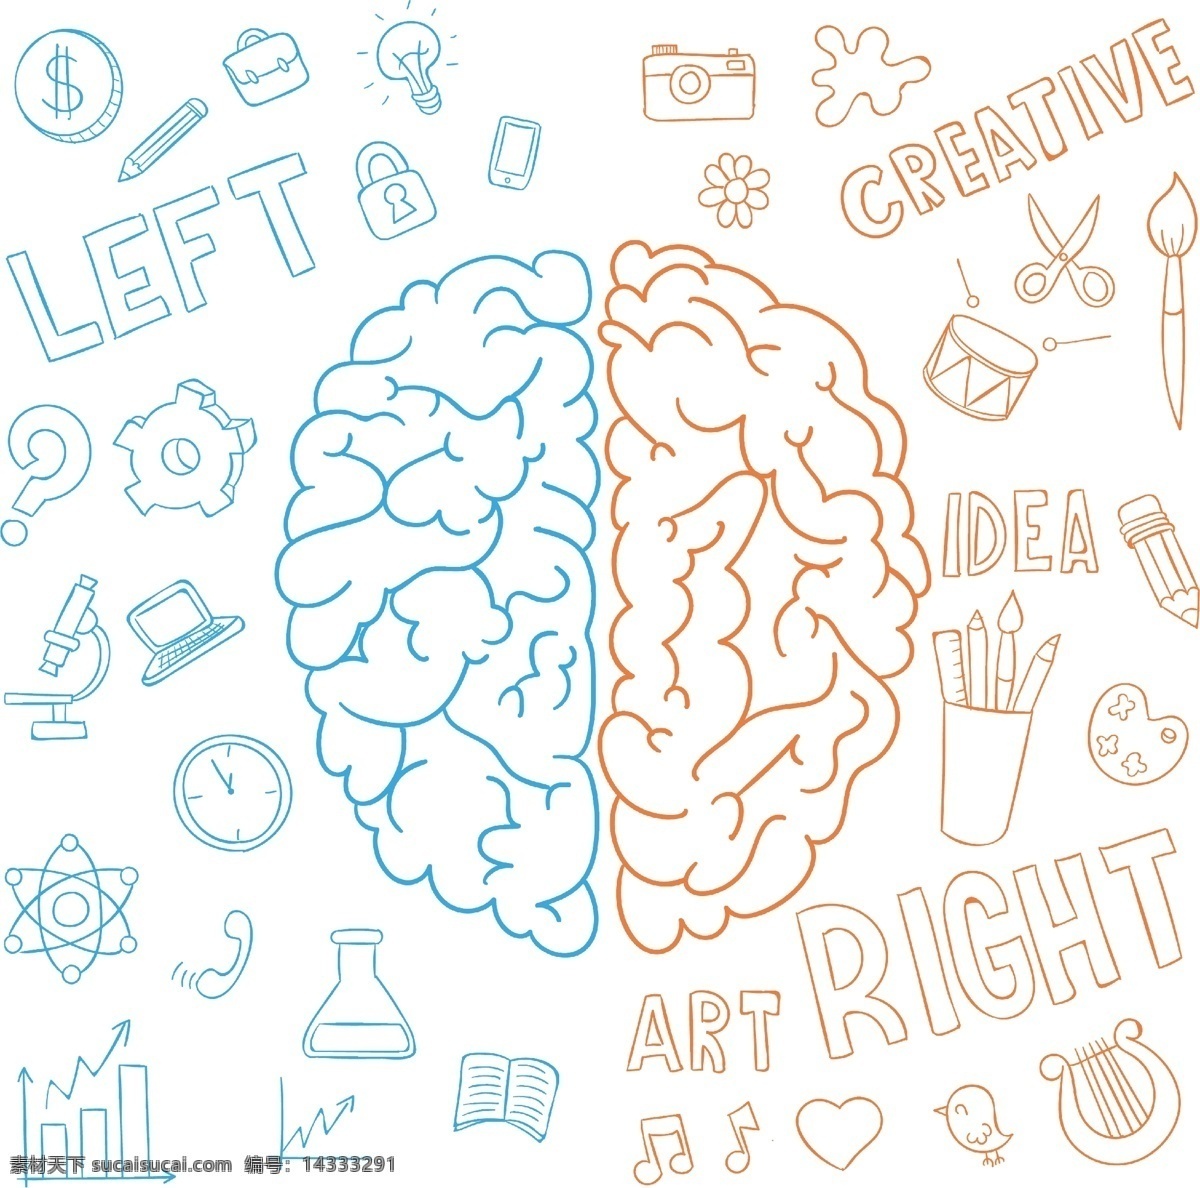 左右大脑 大脑 左脑 右脑 智力 智商 营养 发育 脑部 智力发育 智商高 底纹 底图 背景 满版素材 平面设计 logo 小图片 矢量图 头部 人类